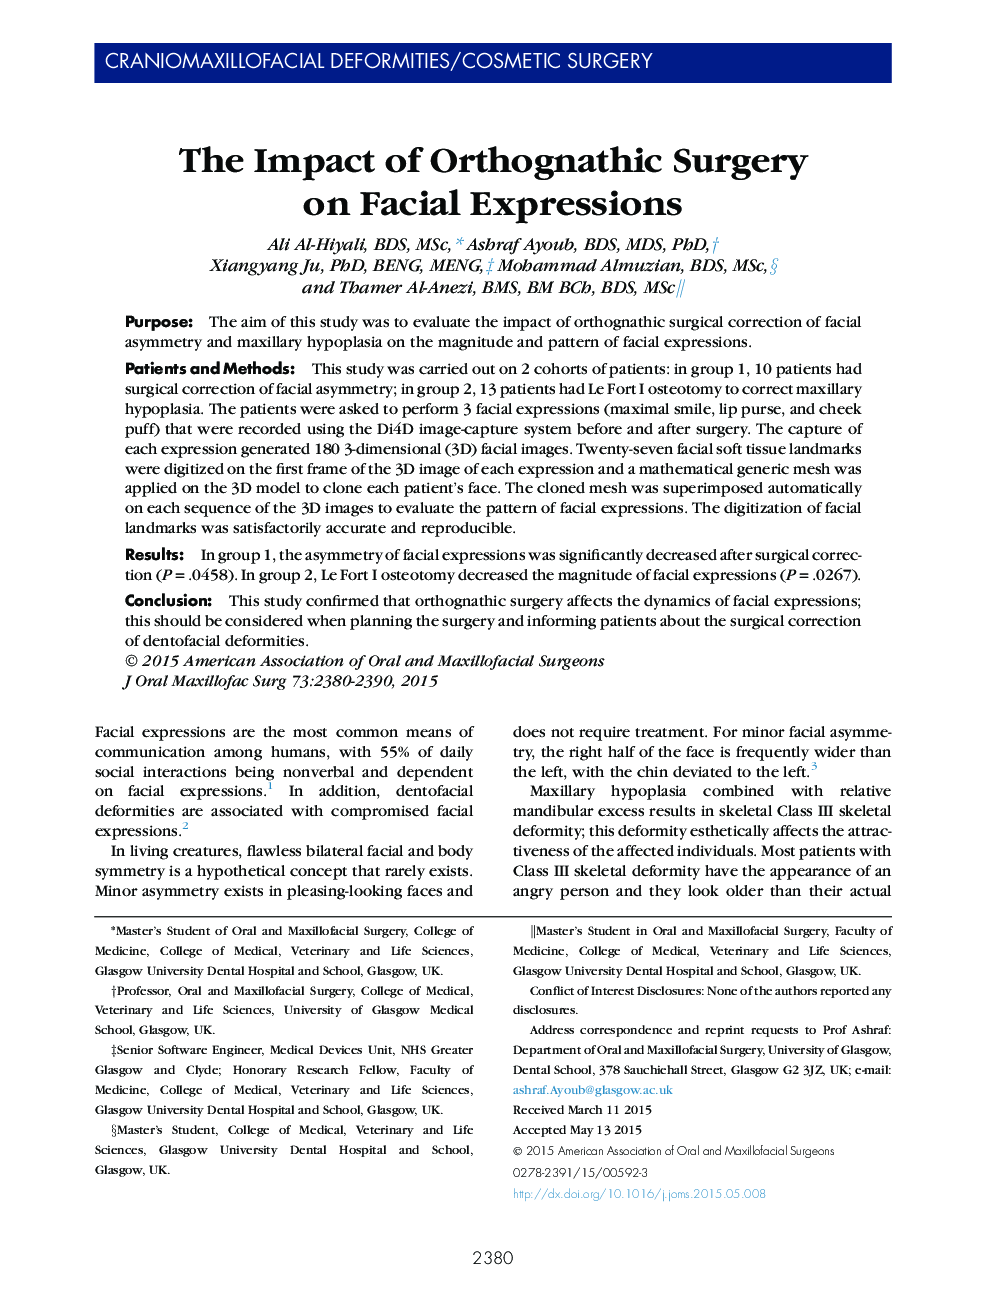 تأثیر جراحی ارتوجاتیک بر عالئم صورت 